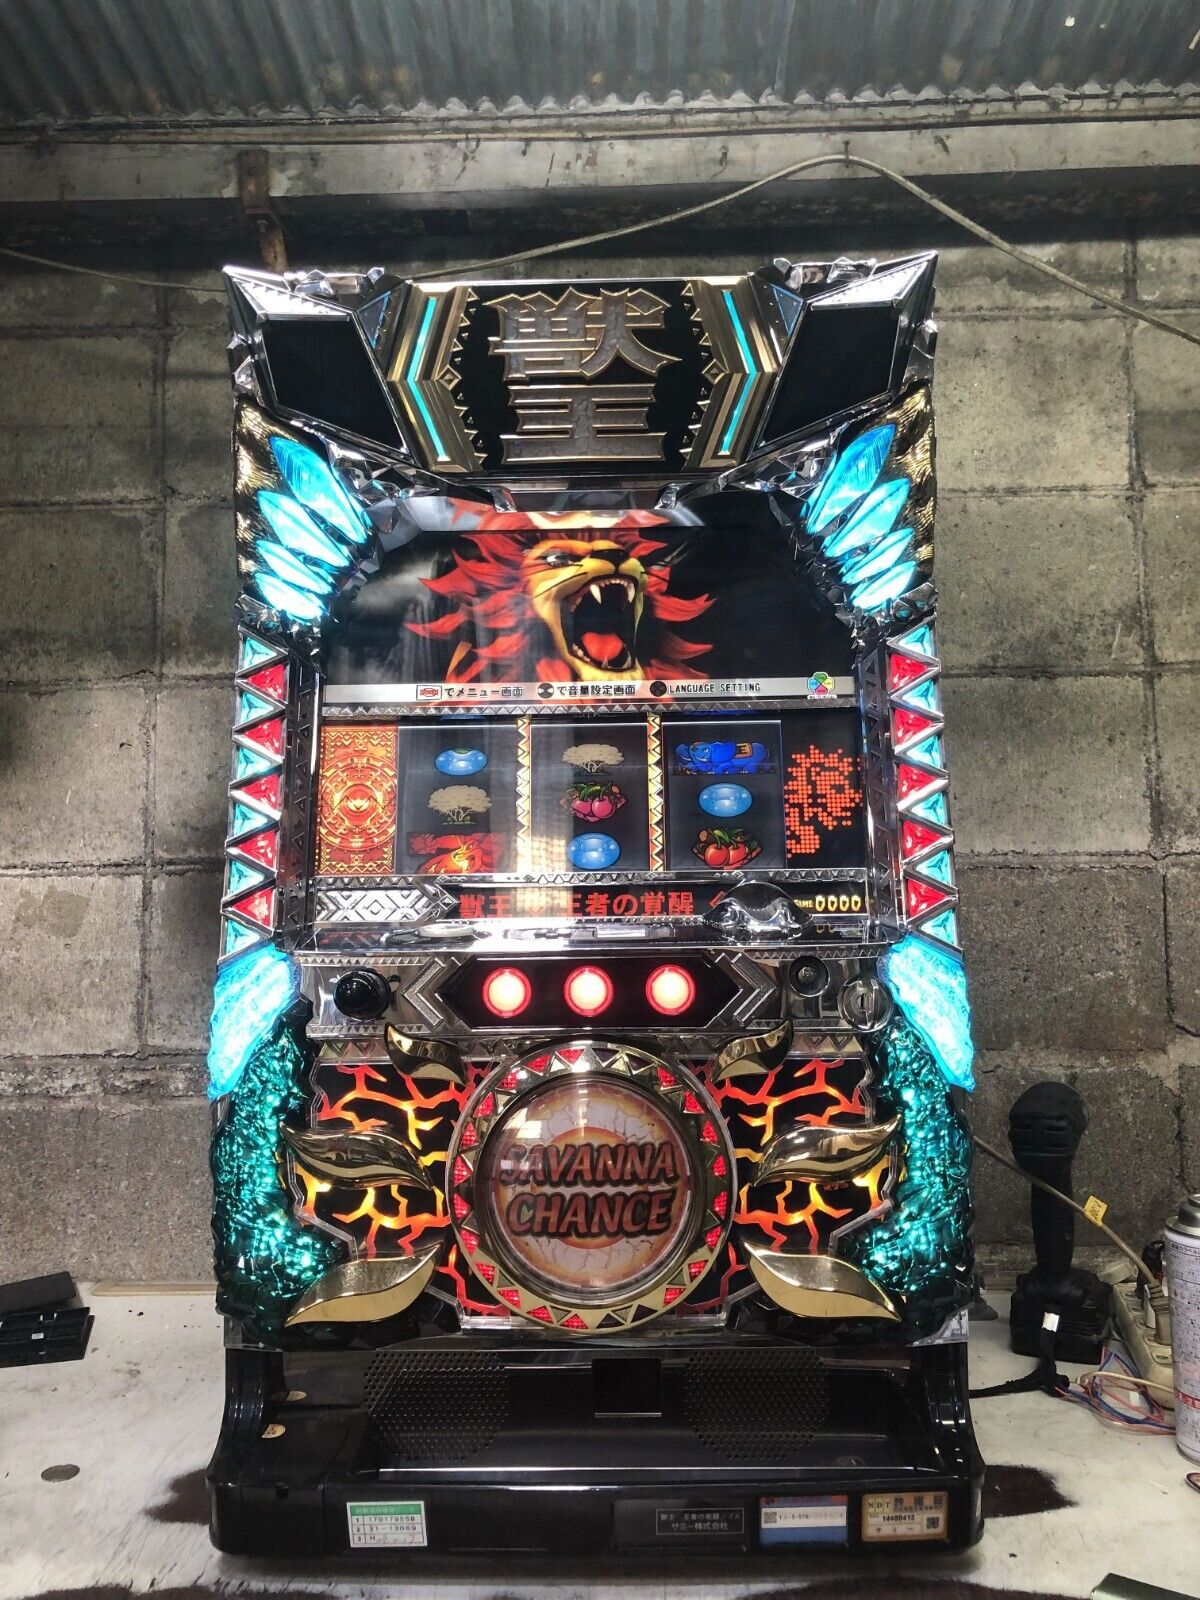 Panel Pachi-Slot Pachinko Machine Pachislot Beast King Awakening of the King